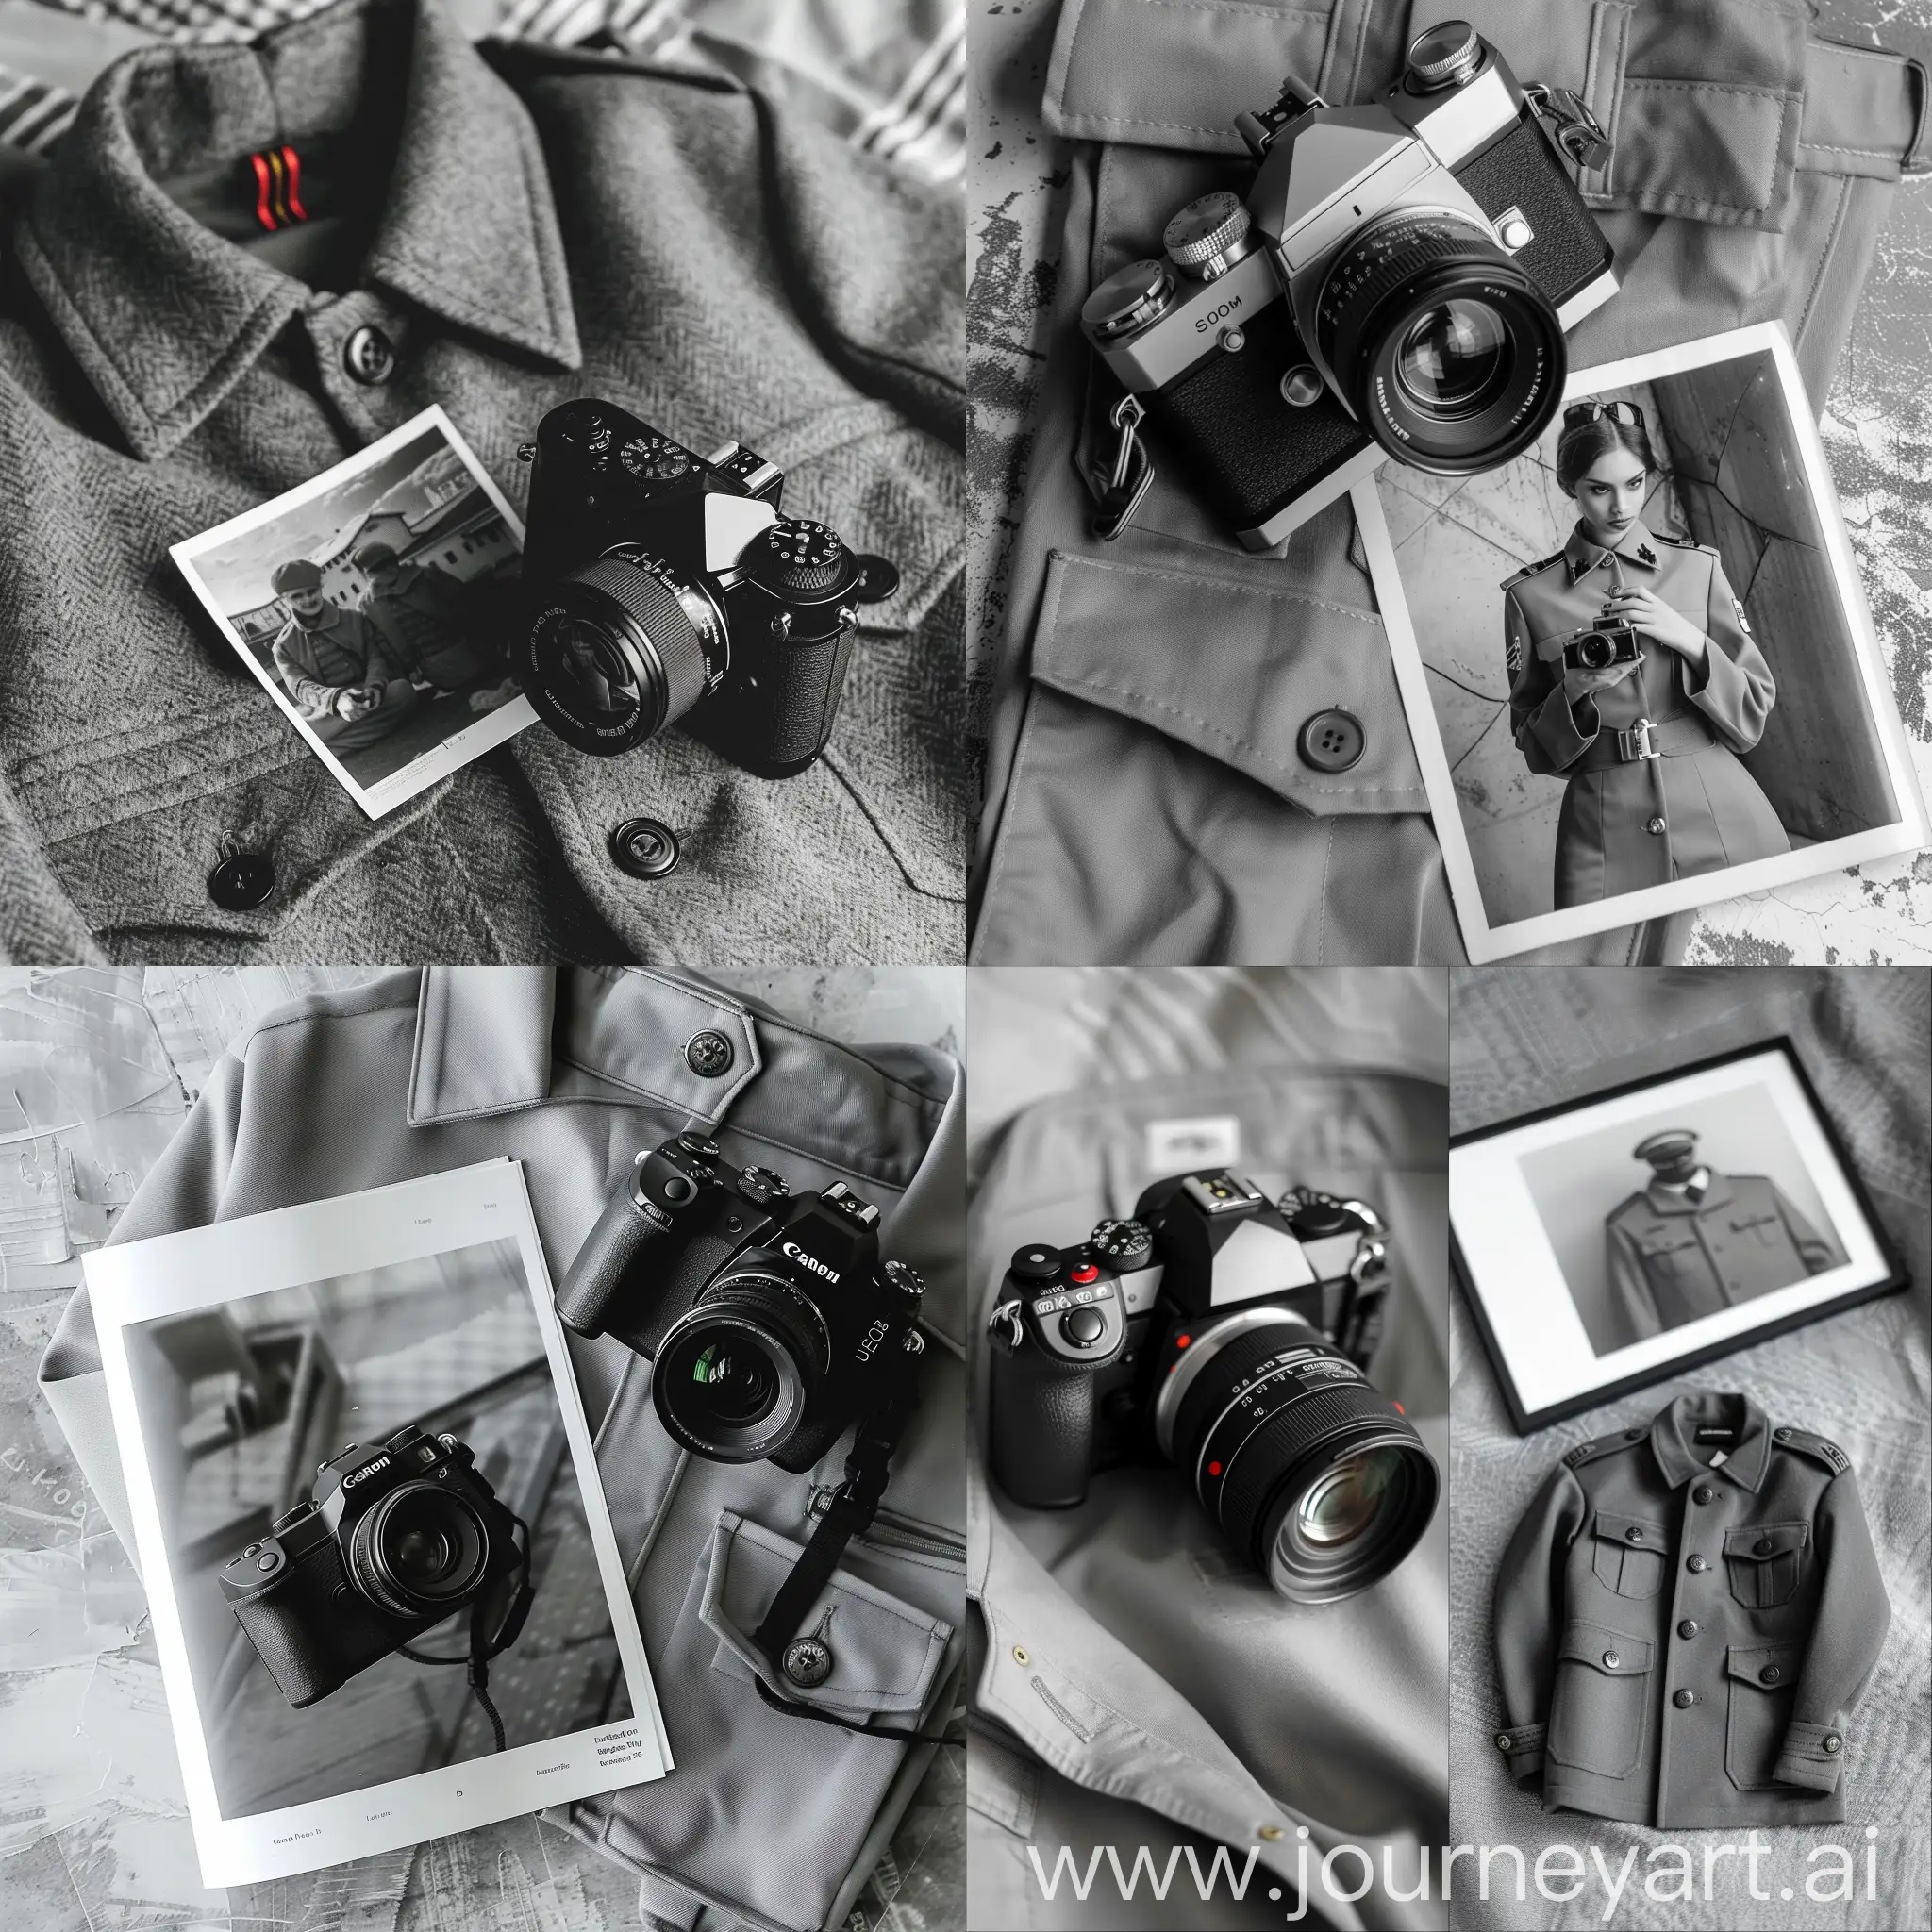 Stylish-Black-and-White-Magazine-Photo-Capturing-Digital-Camera-Aesthetics